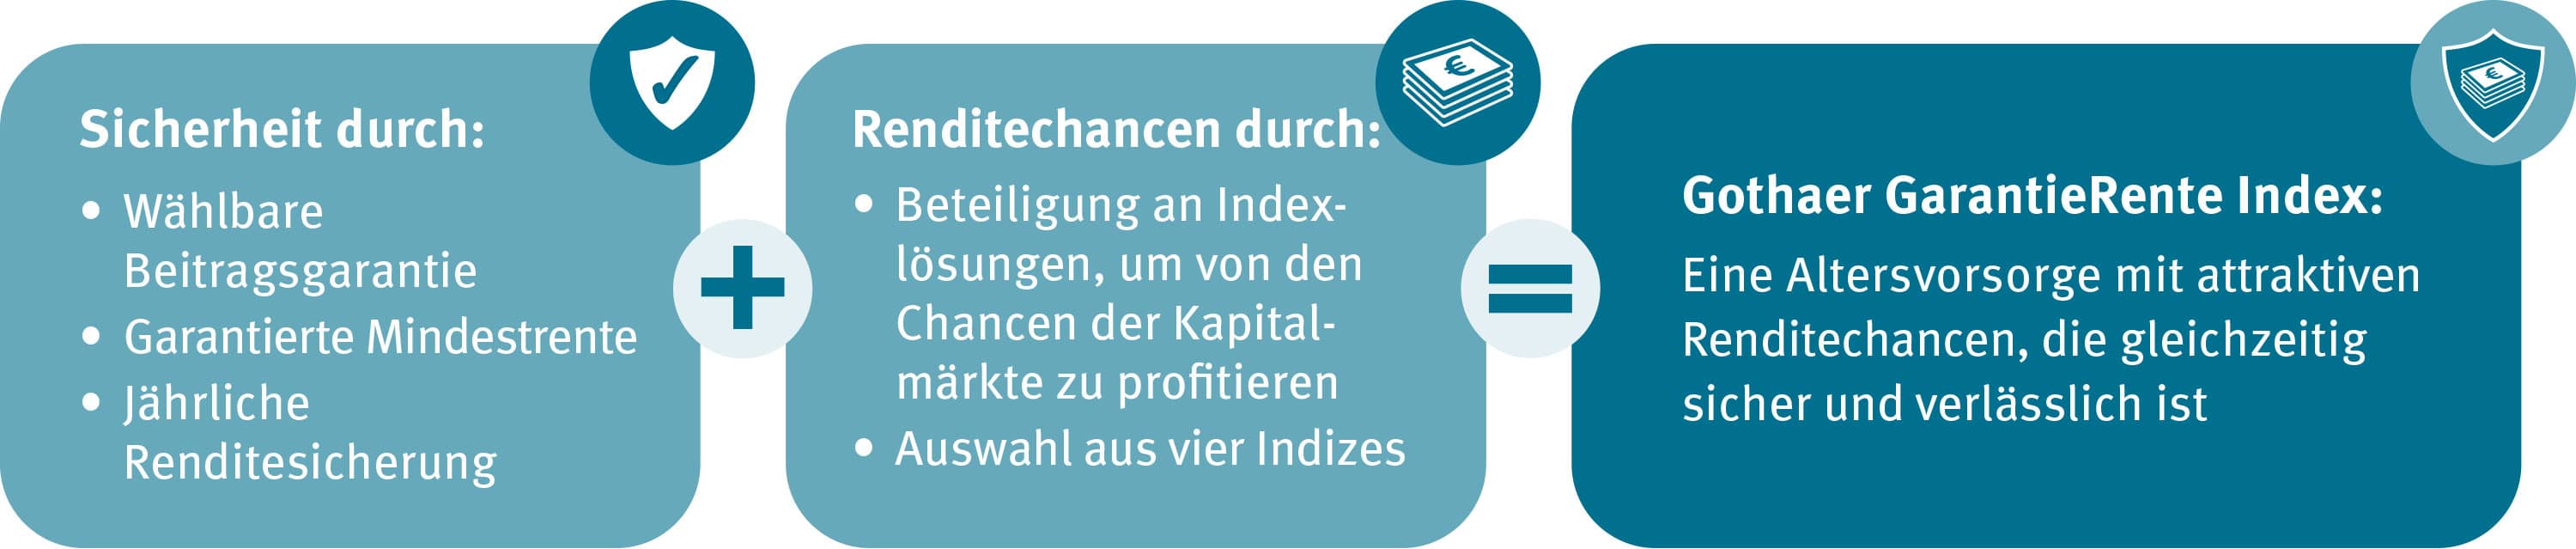 Grafik zur GarantieRente Index